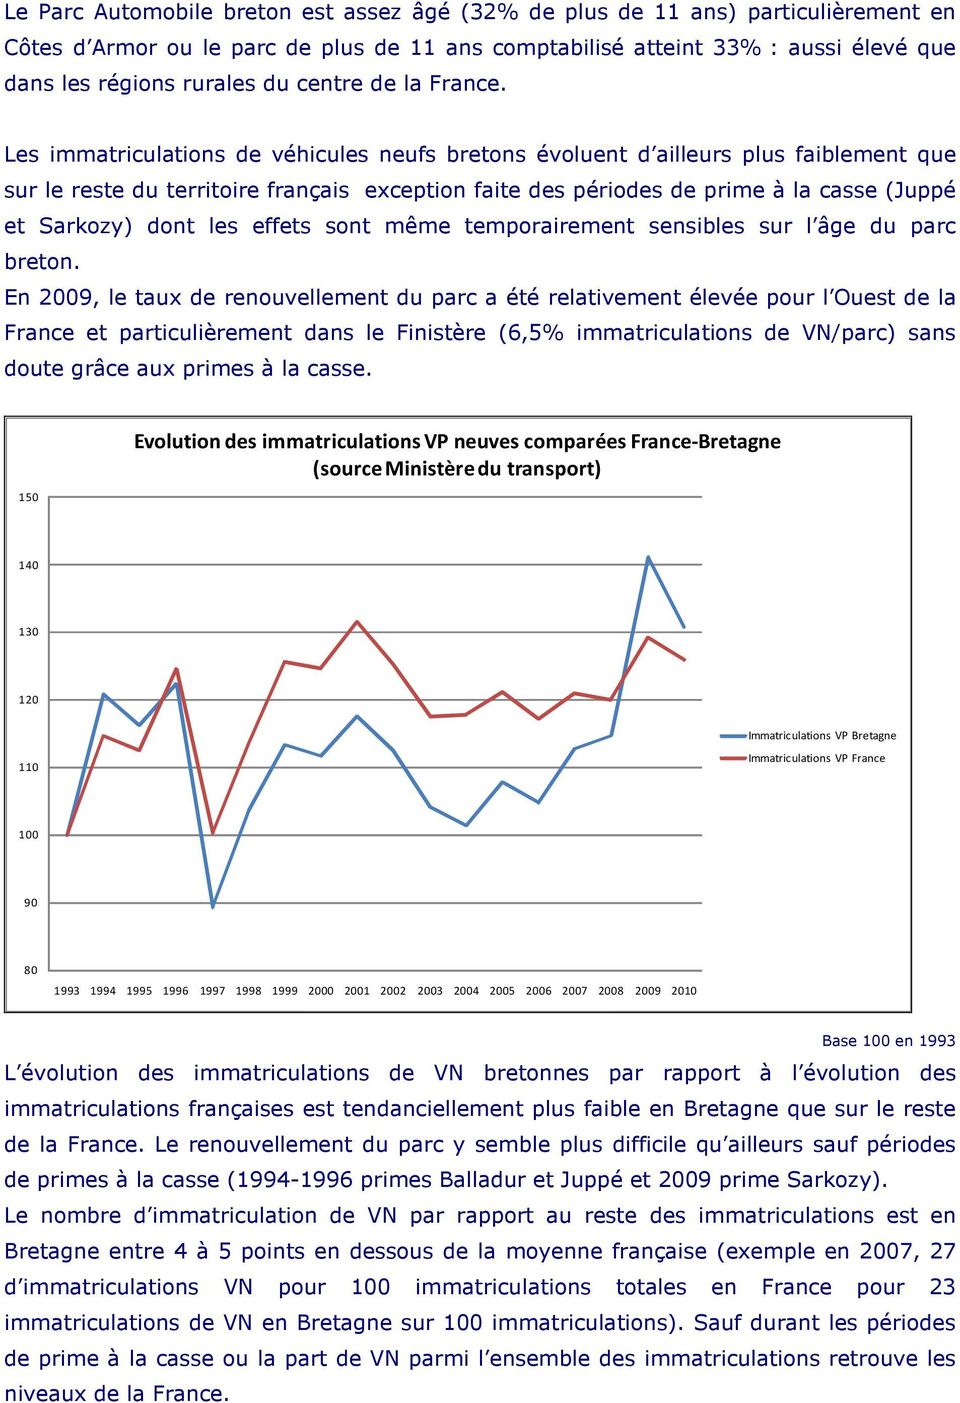 Les immatriculations de véhicules neufs bretons évoluent d ailleurs plus faiblement que sur le reste du territoire français exception faite des périodes de prime à la casse (Juppé et Sarkozy) dont